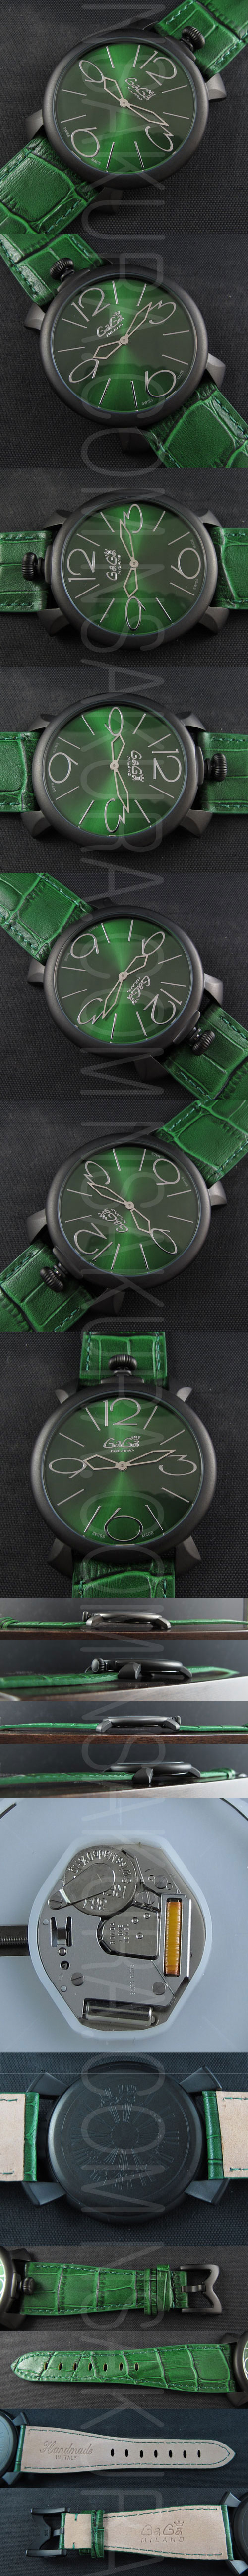 腕時計満載ガガ ミラノ(グリーン文字盤＆グリーン革ベルト)